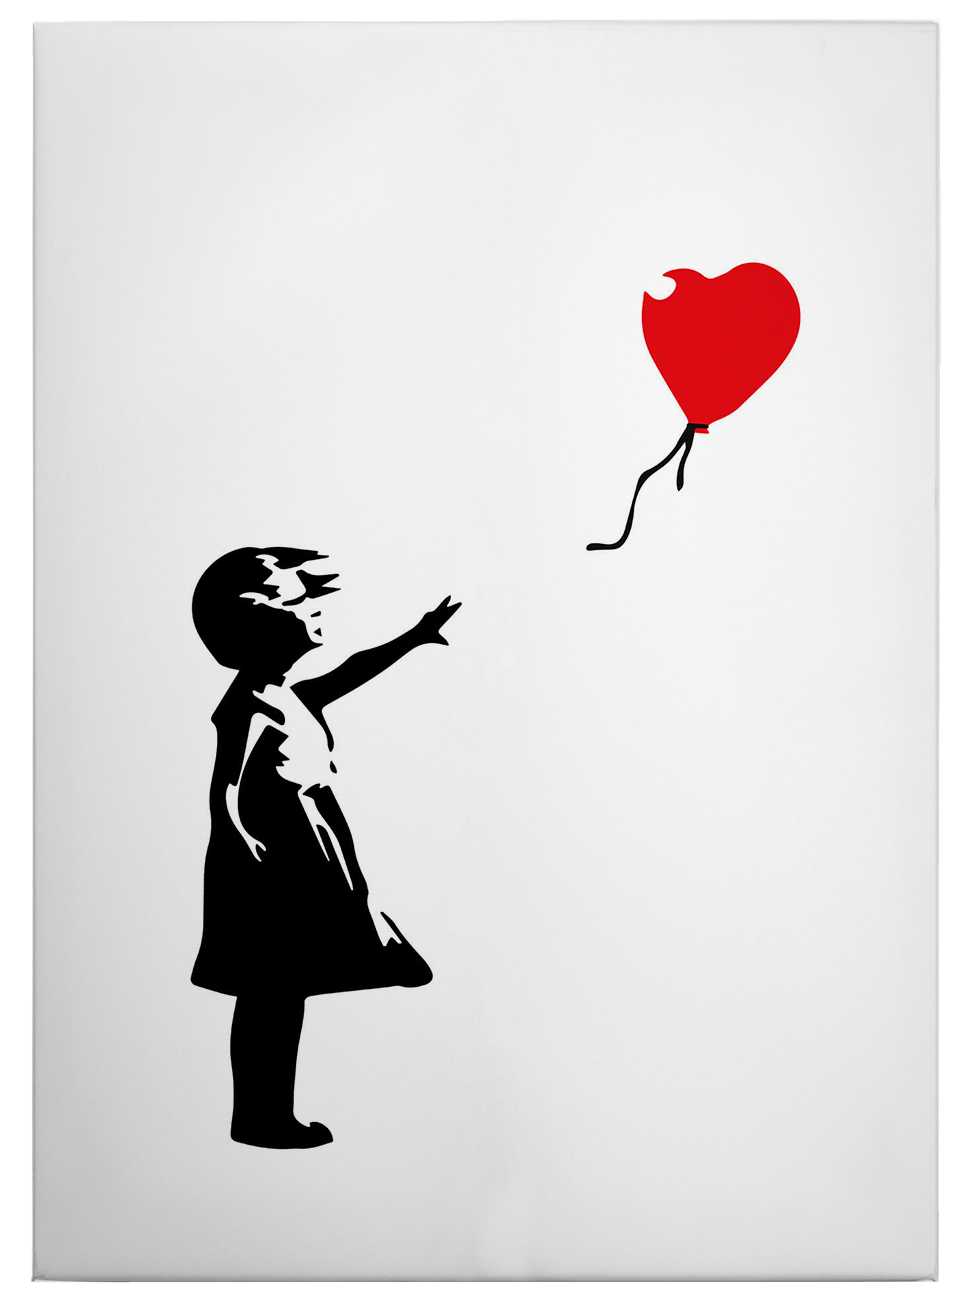             Quadro su tela "Ragazza con palloncino rosso" di Banksy - 0,50 m x 0,70 m
        